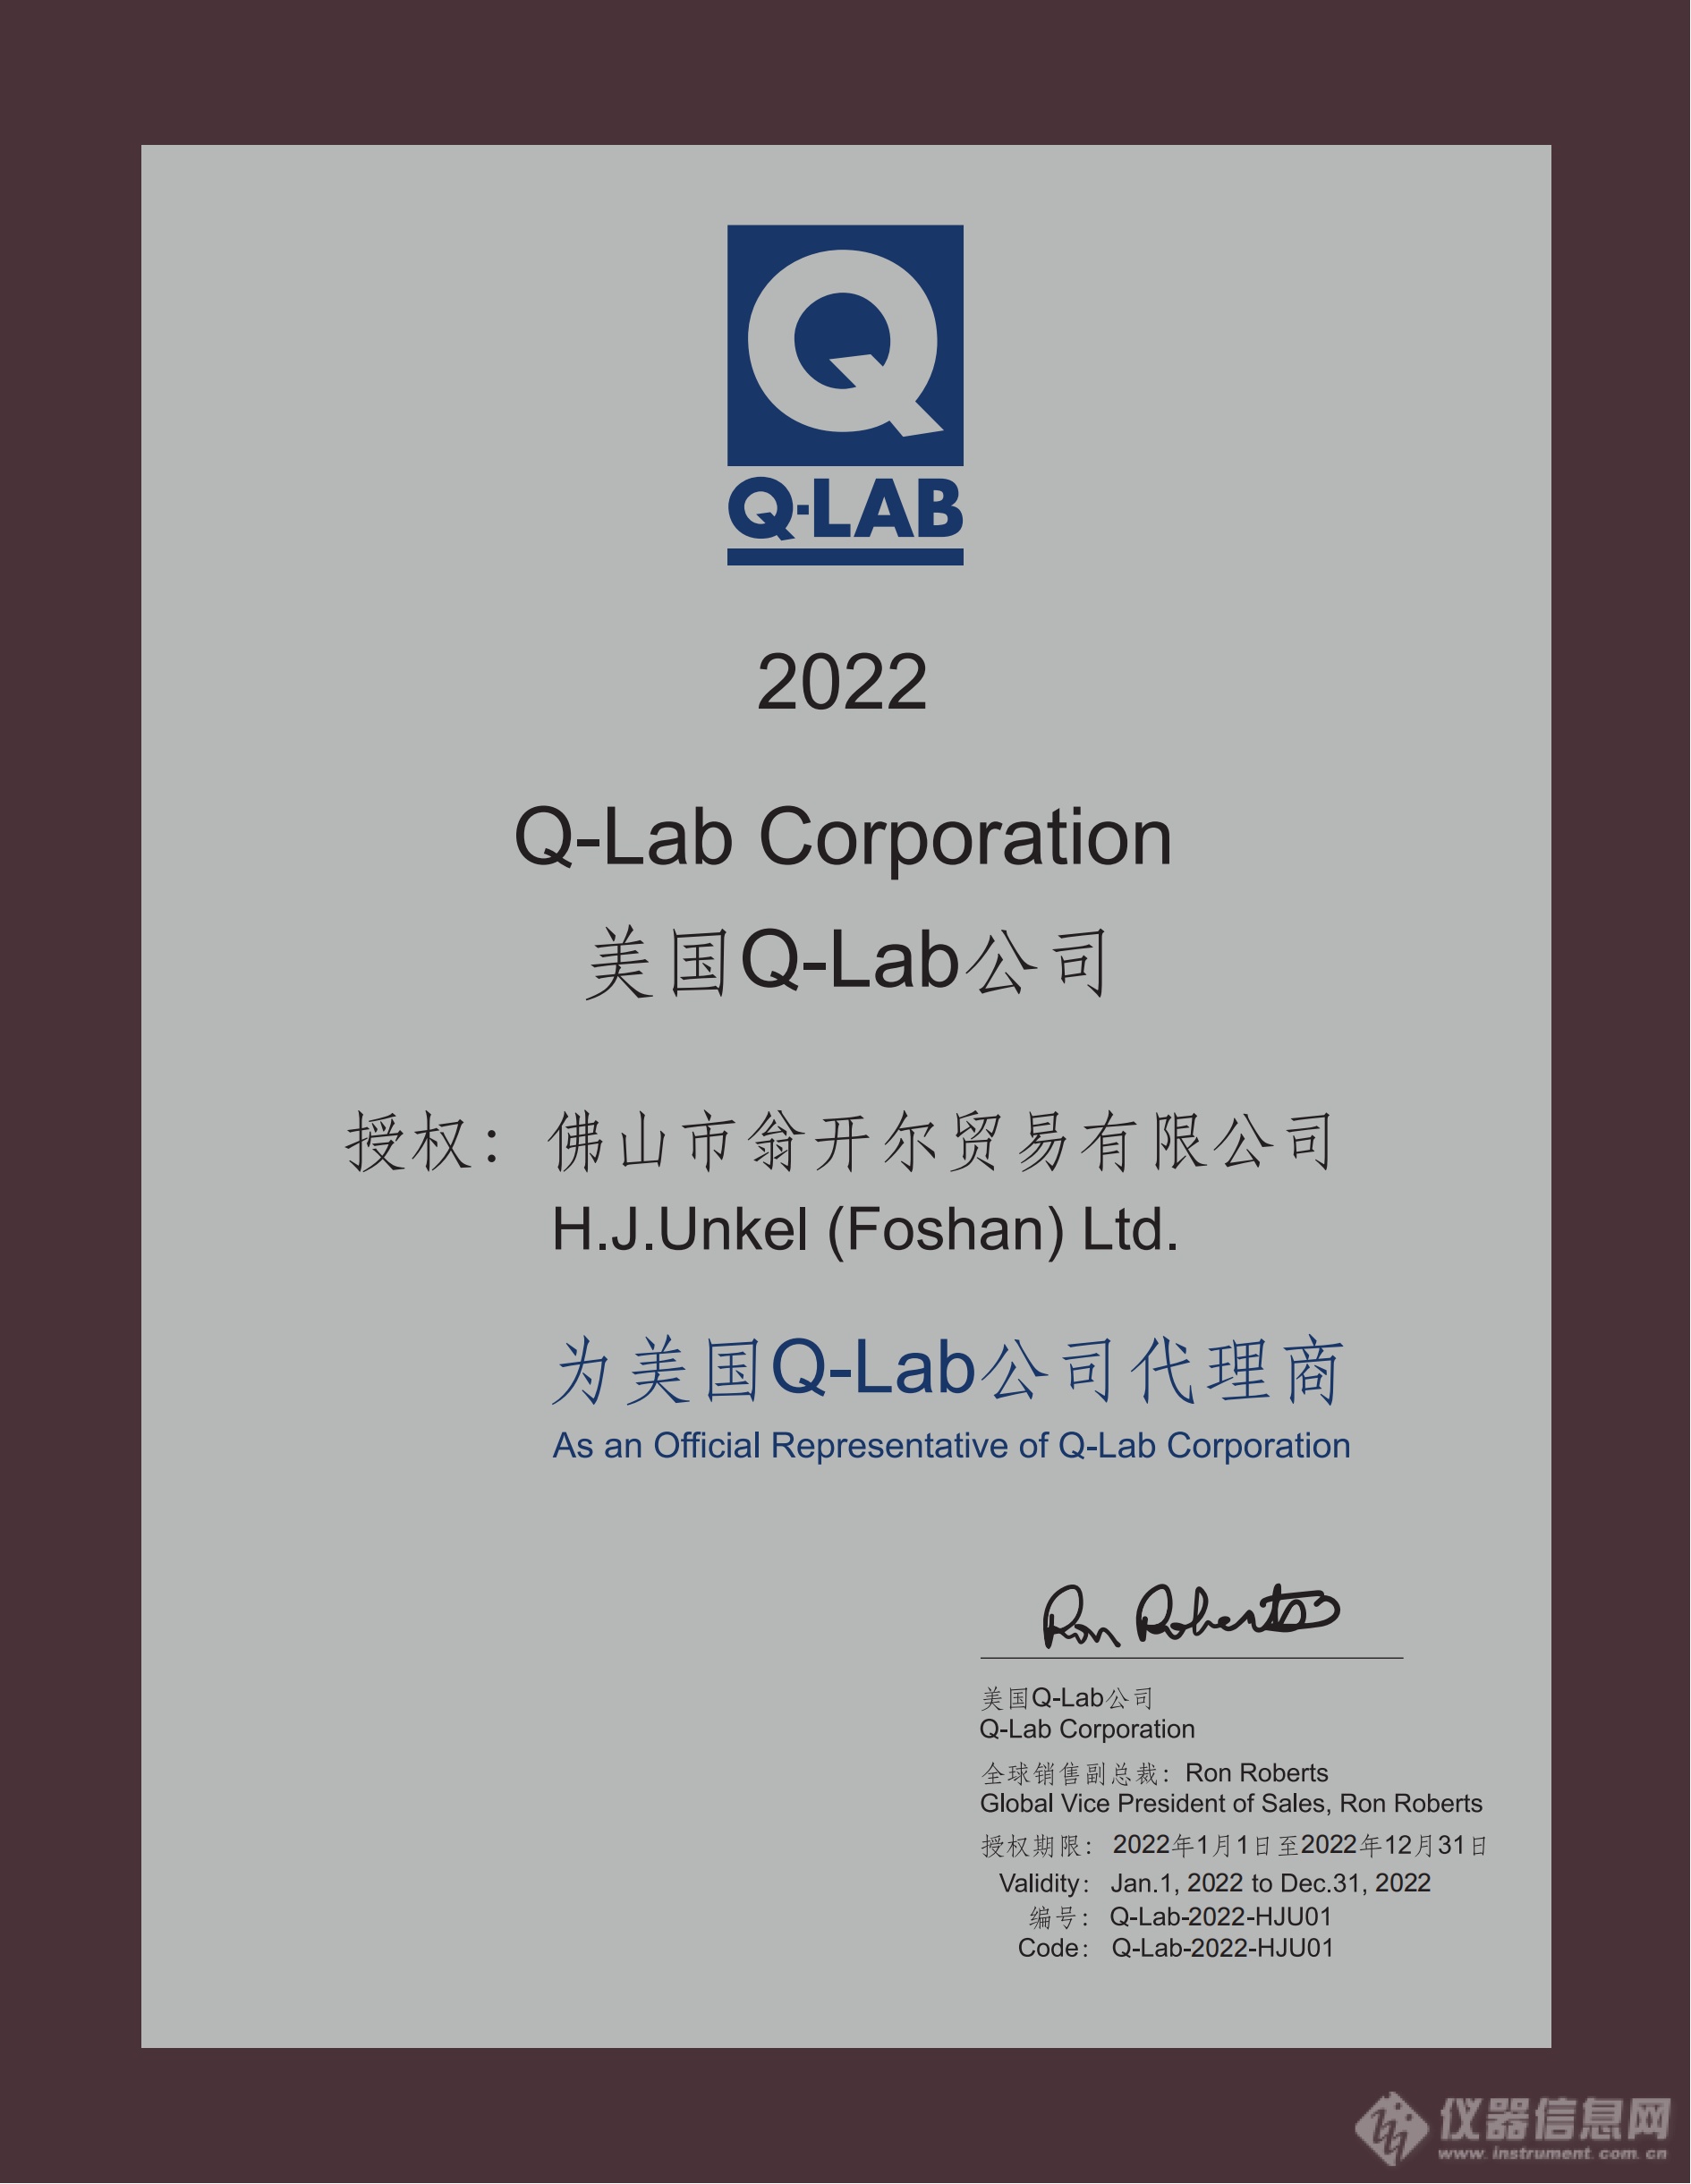 翁开尔40年代理美国Q-LAB系列产品